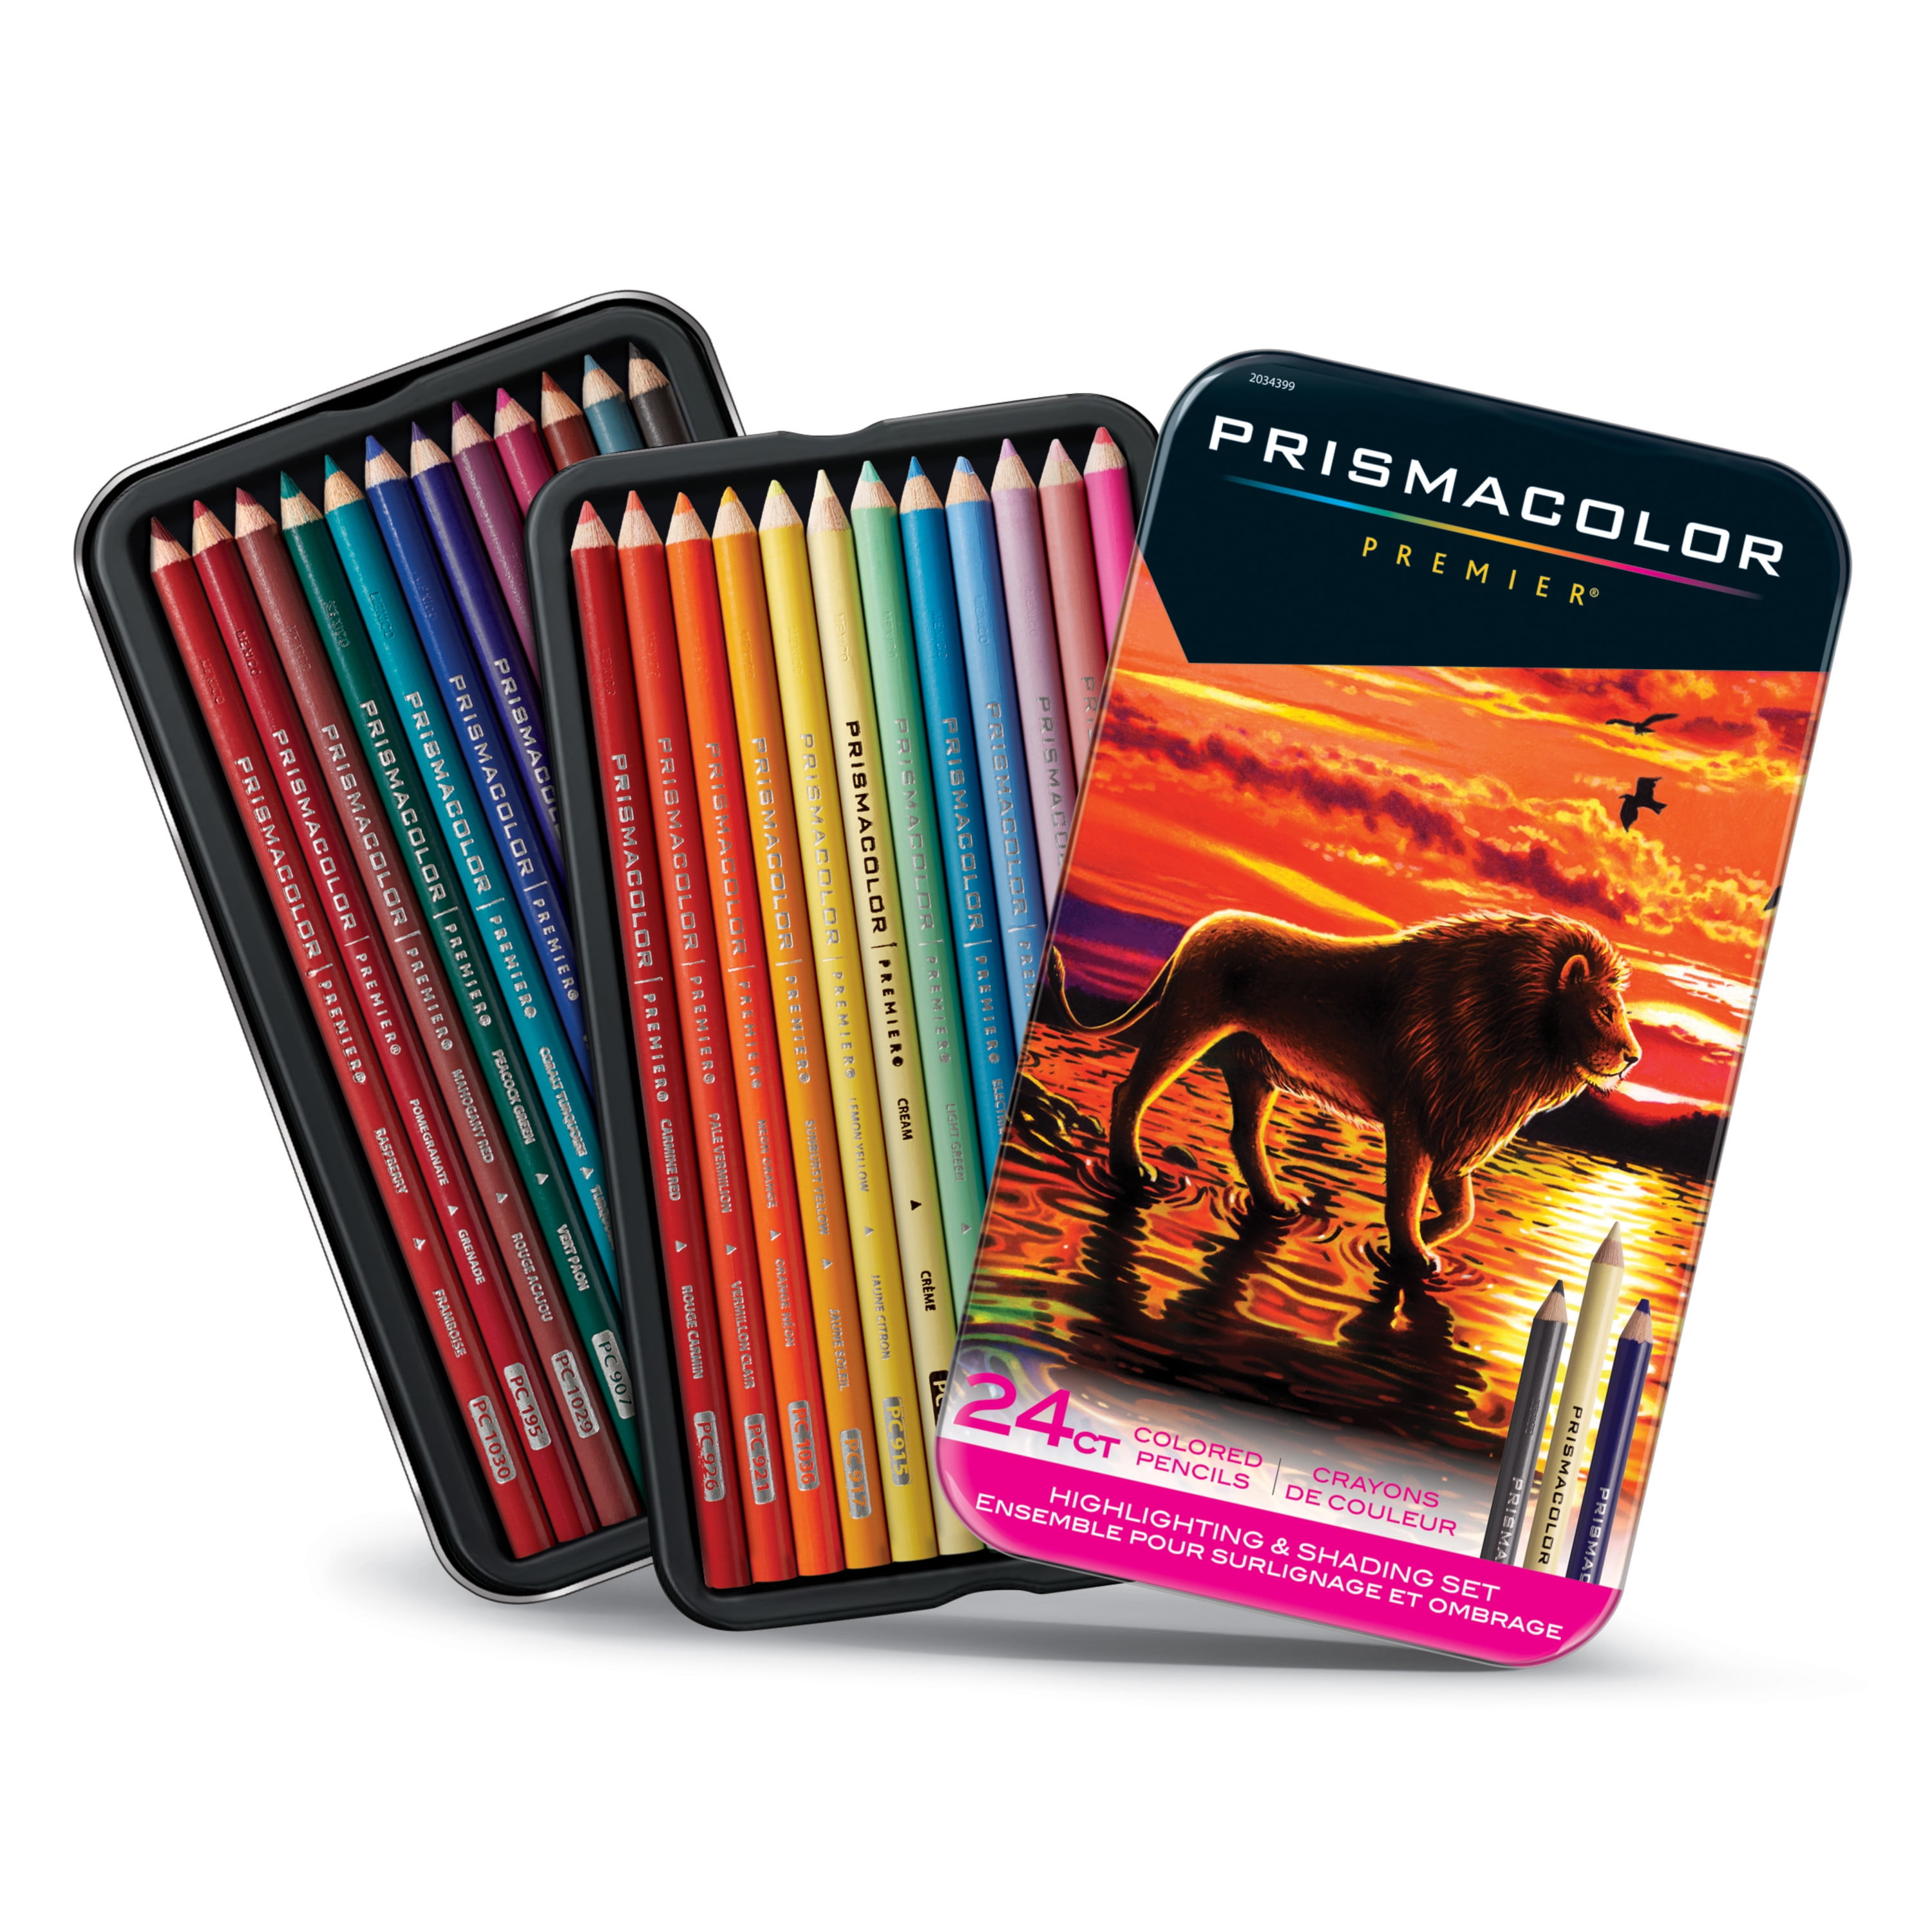  Prismacolor 3365 Premier Soft Core Colored Pencil